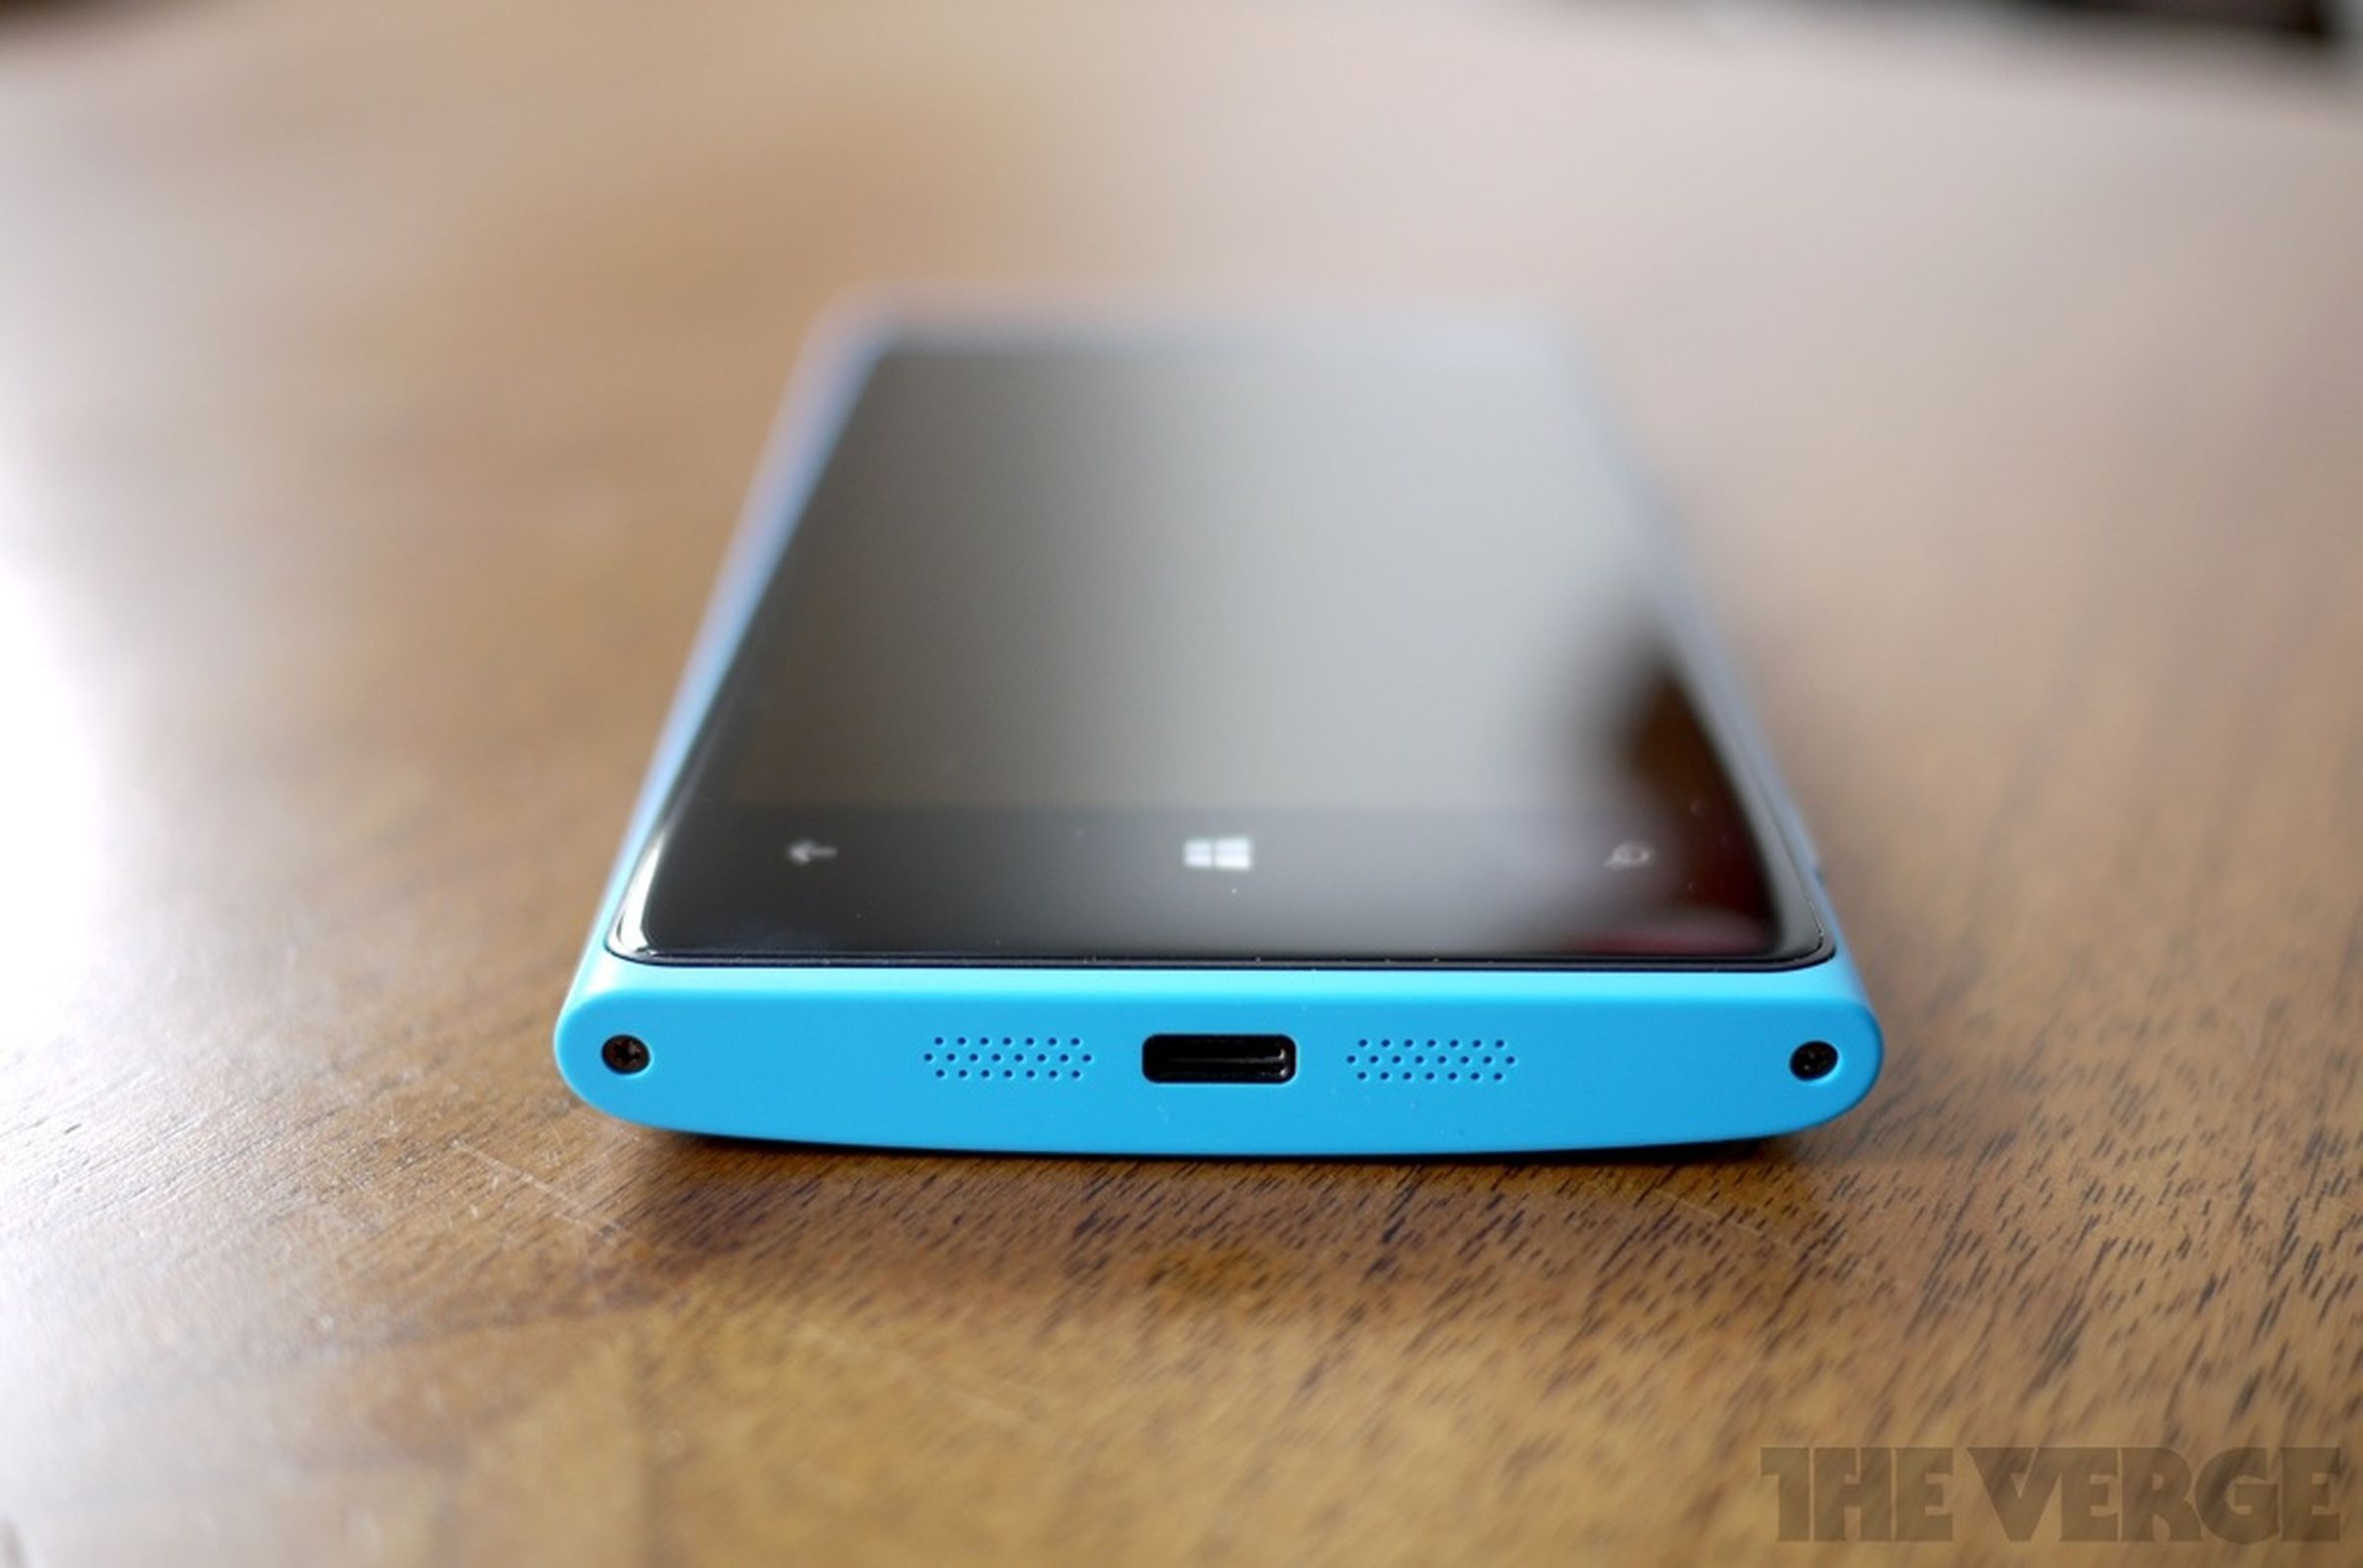 Nokia Lumia 920 hardware photos